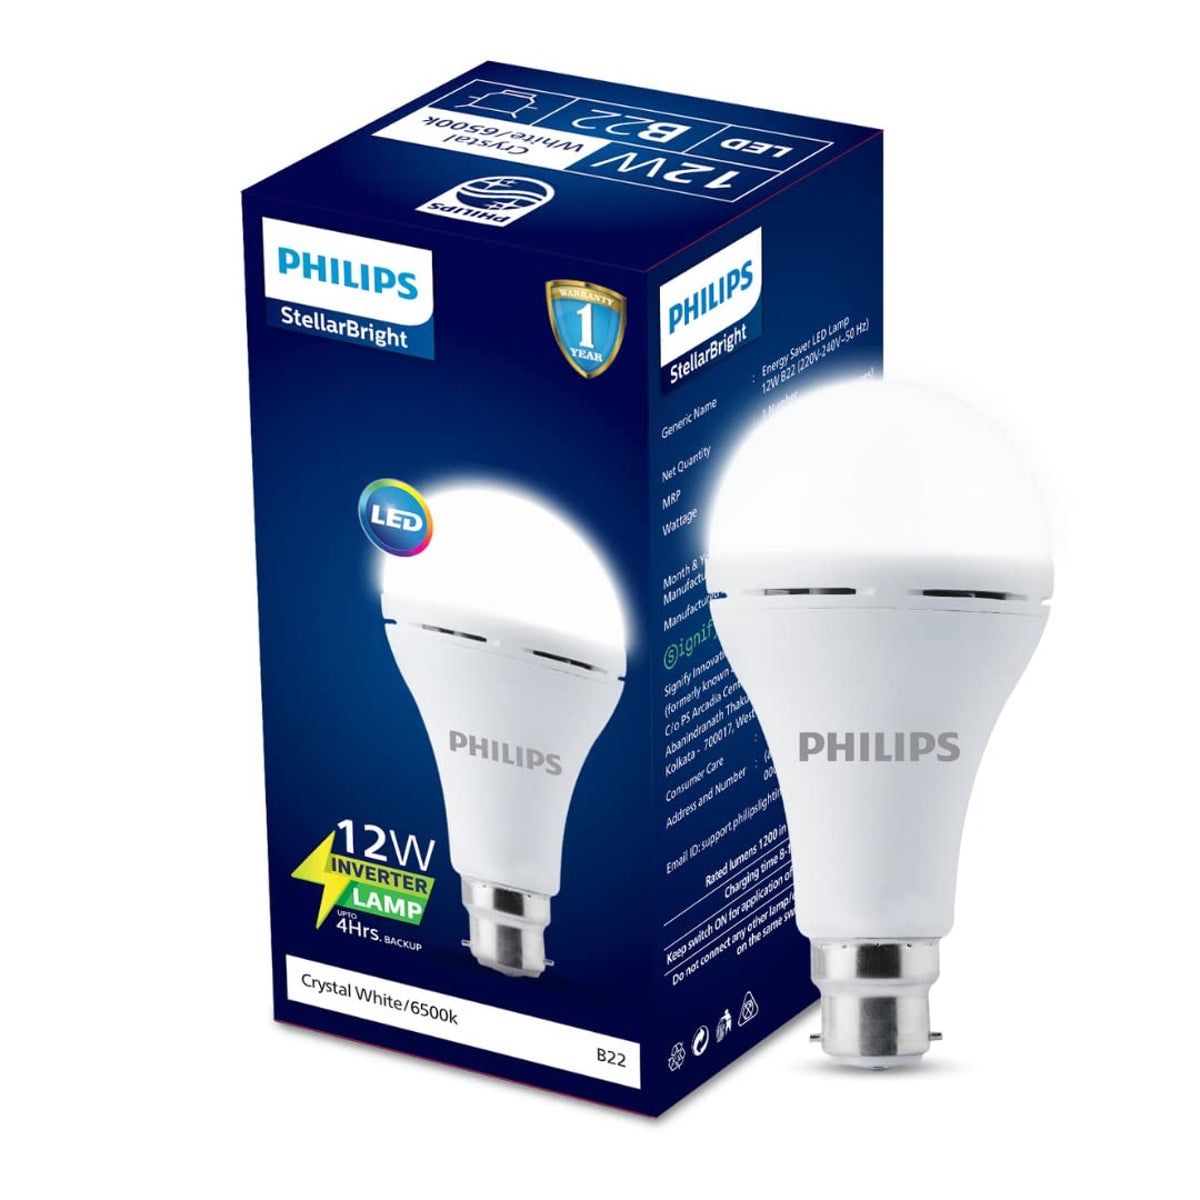 Philips LED Emergency Bulb (Inverter bulb)